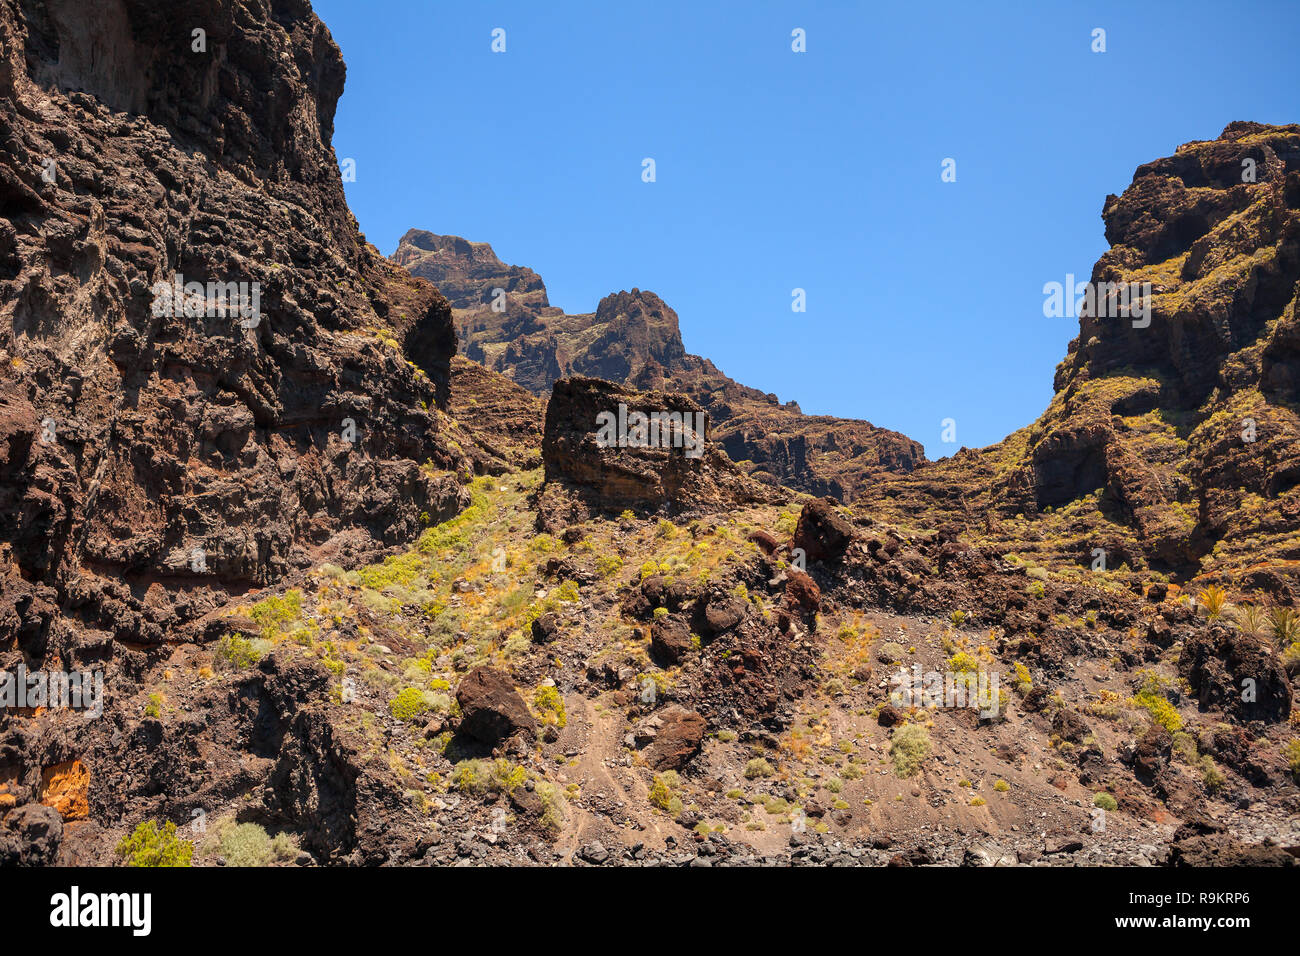 Los Gigantes - famoso lugar en Tenerife, Islas Canarias, España. Foto de stock